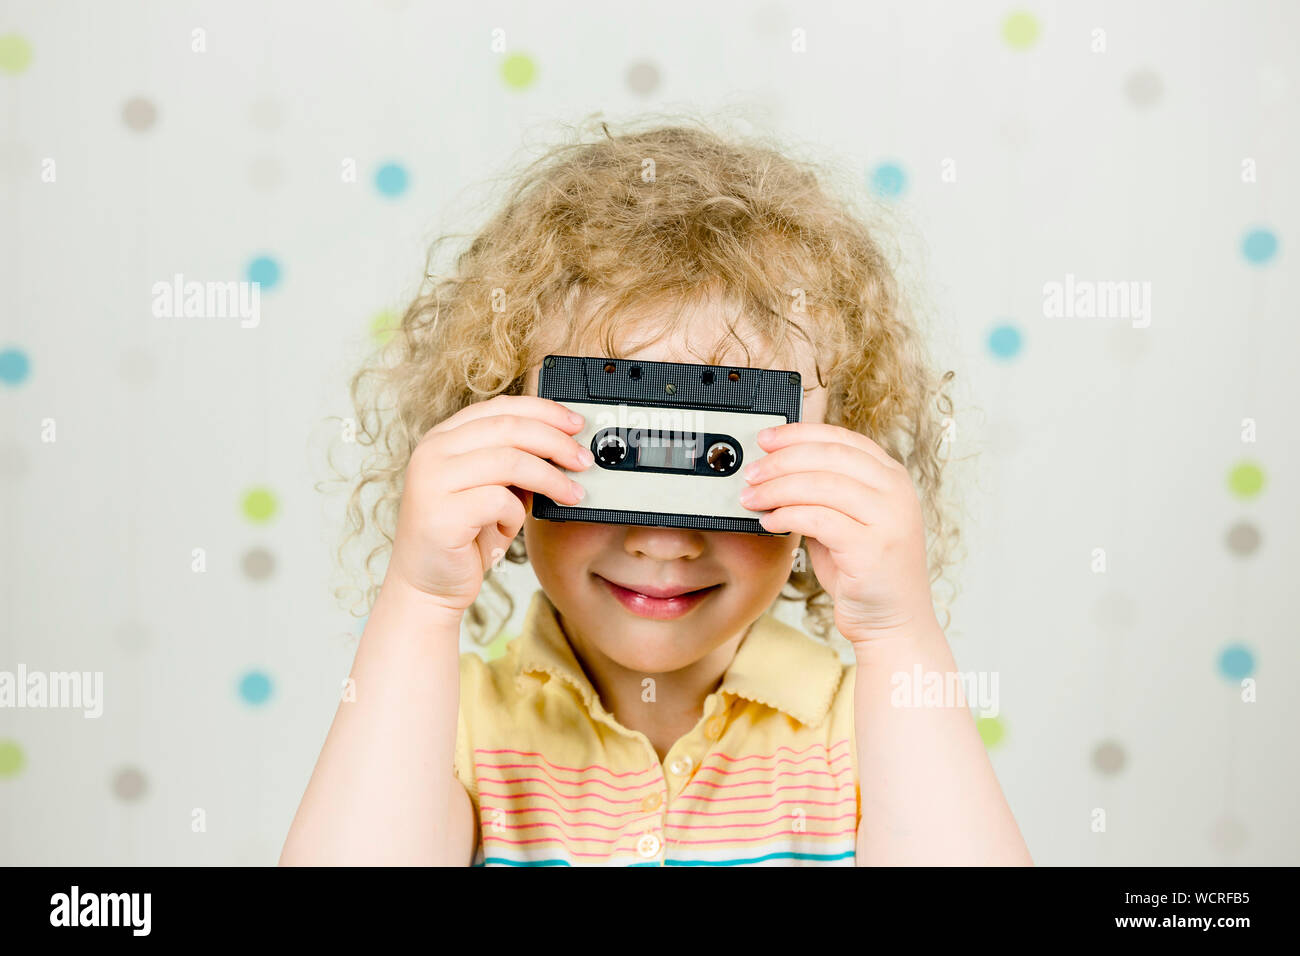 Divertente immagine di 5 anno vecchia ragazza holding e guardando attraverso il retro 80s cassetta a nastro in ambienti chiusi, sfondo luminoso. Foto Stock